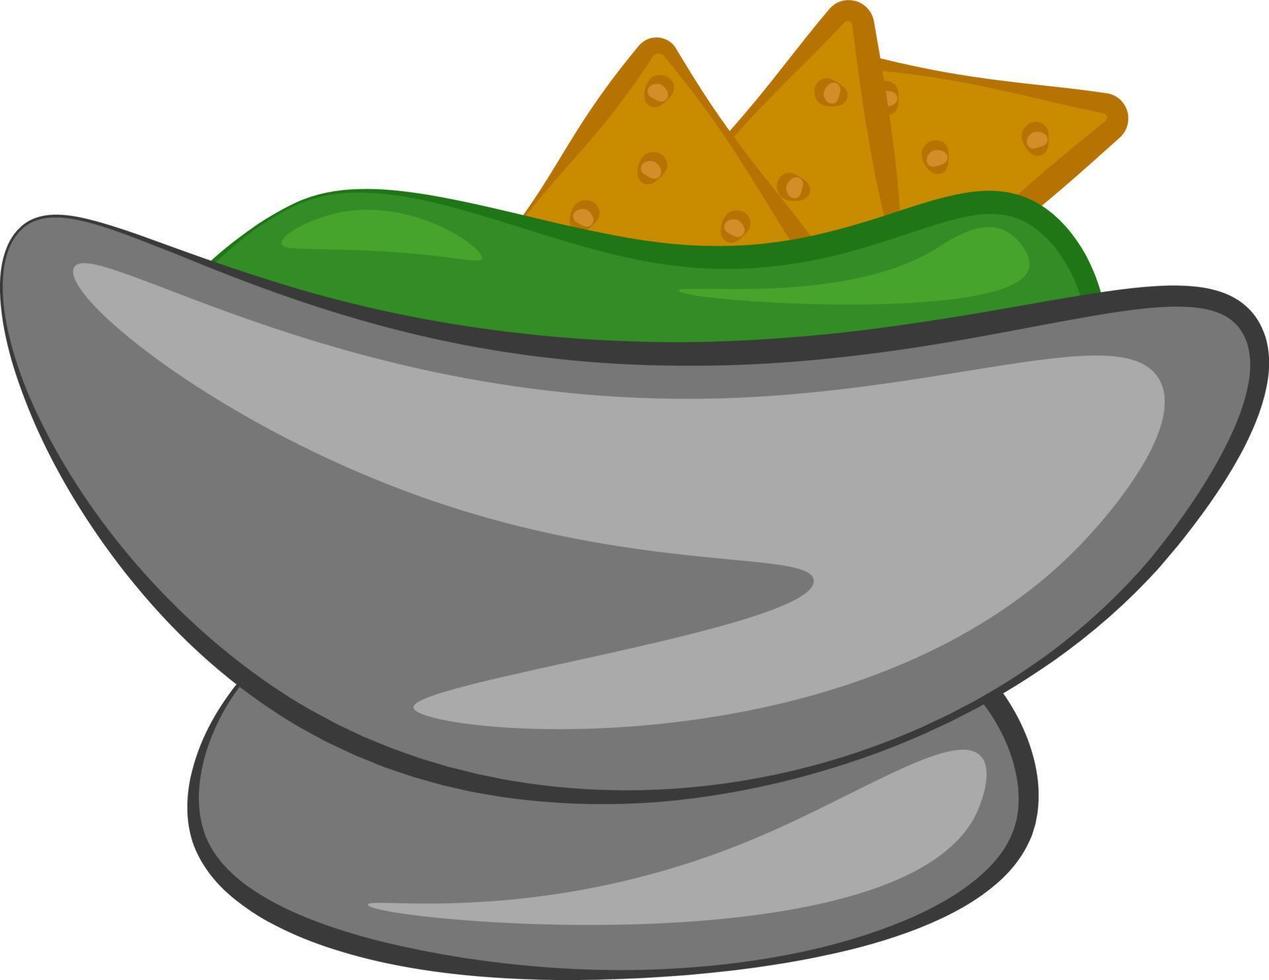 en friska guacamole dopp, vektor eller Färg illustration.